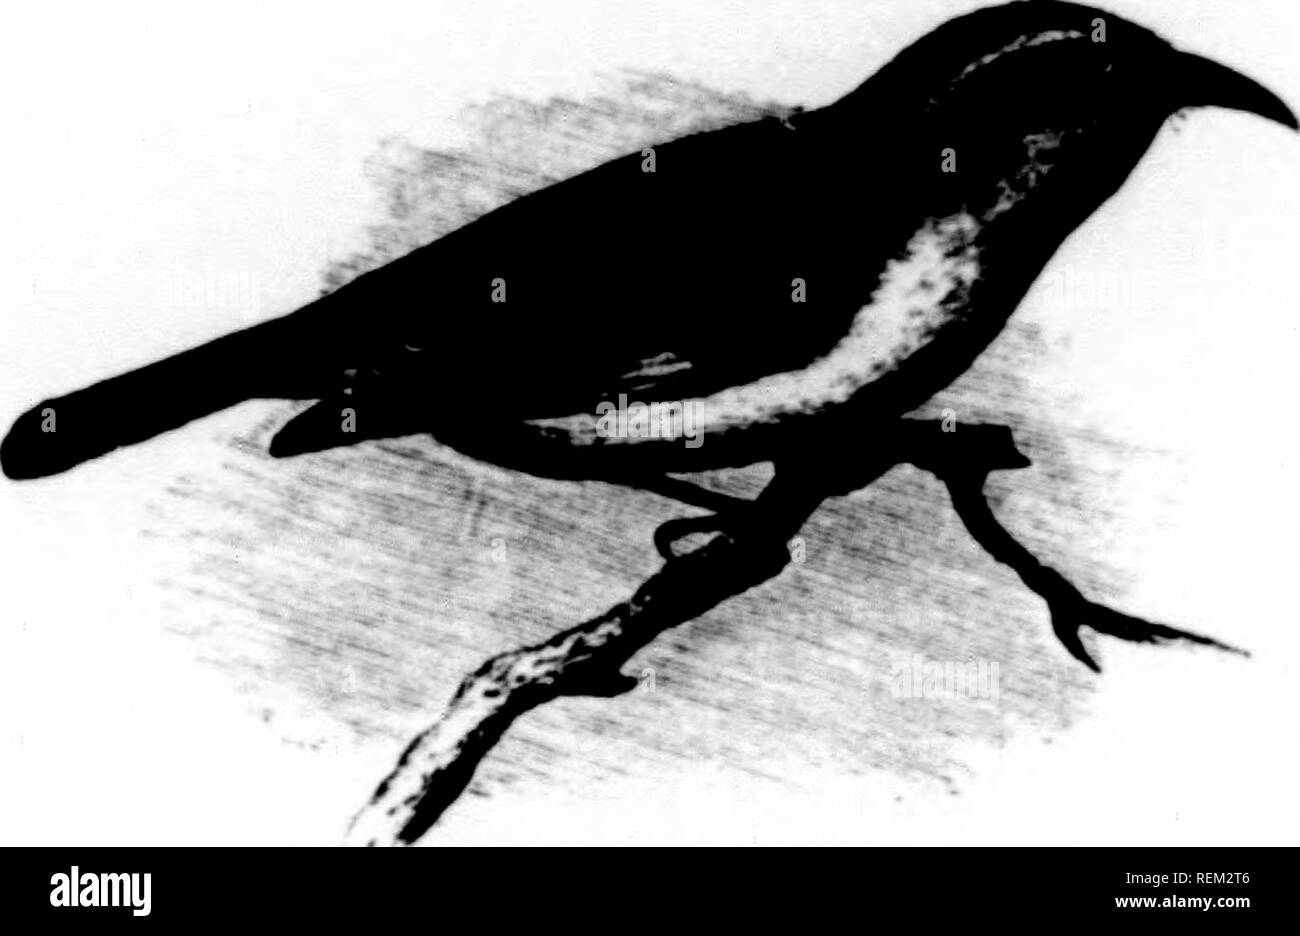 A history of North American birds [microform] : land birds. Birds